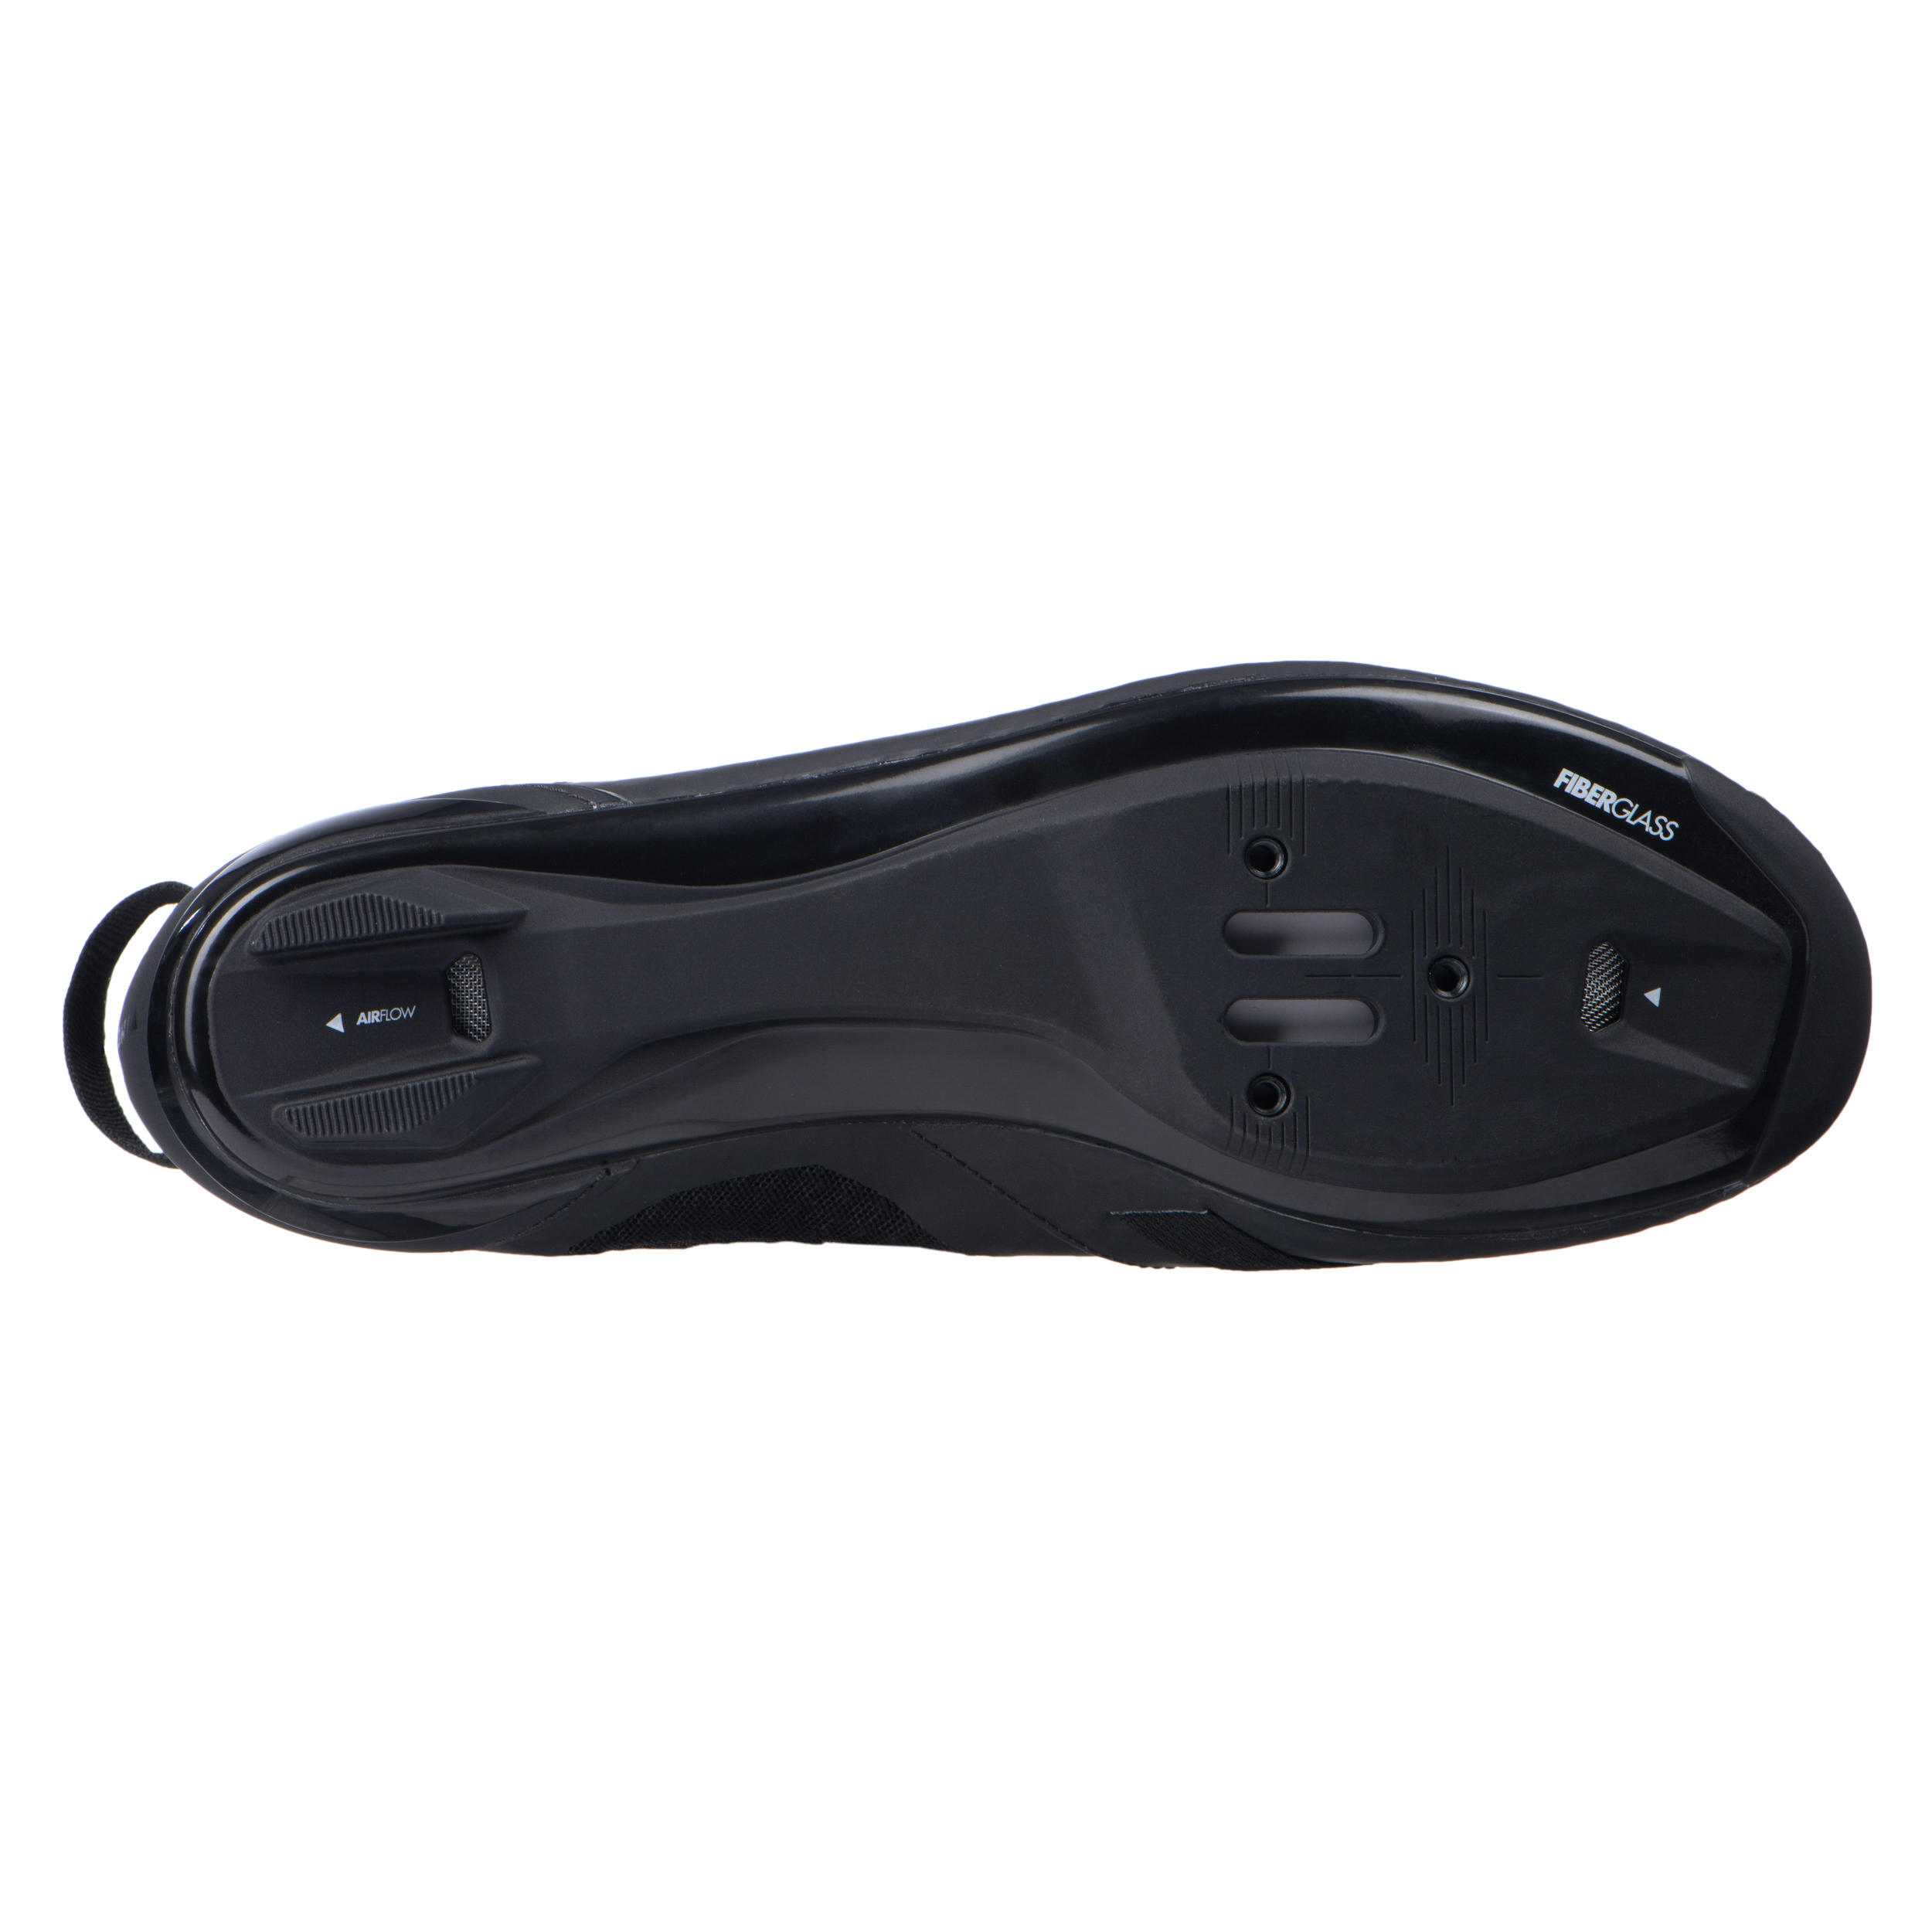 Aptonia Triathlon Cycling Shoes - Black 7/8